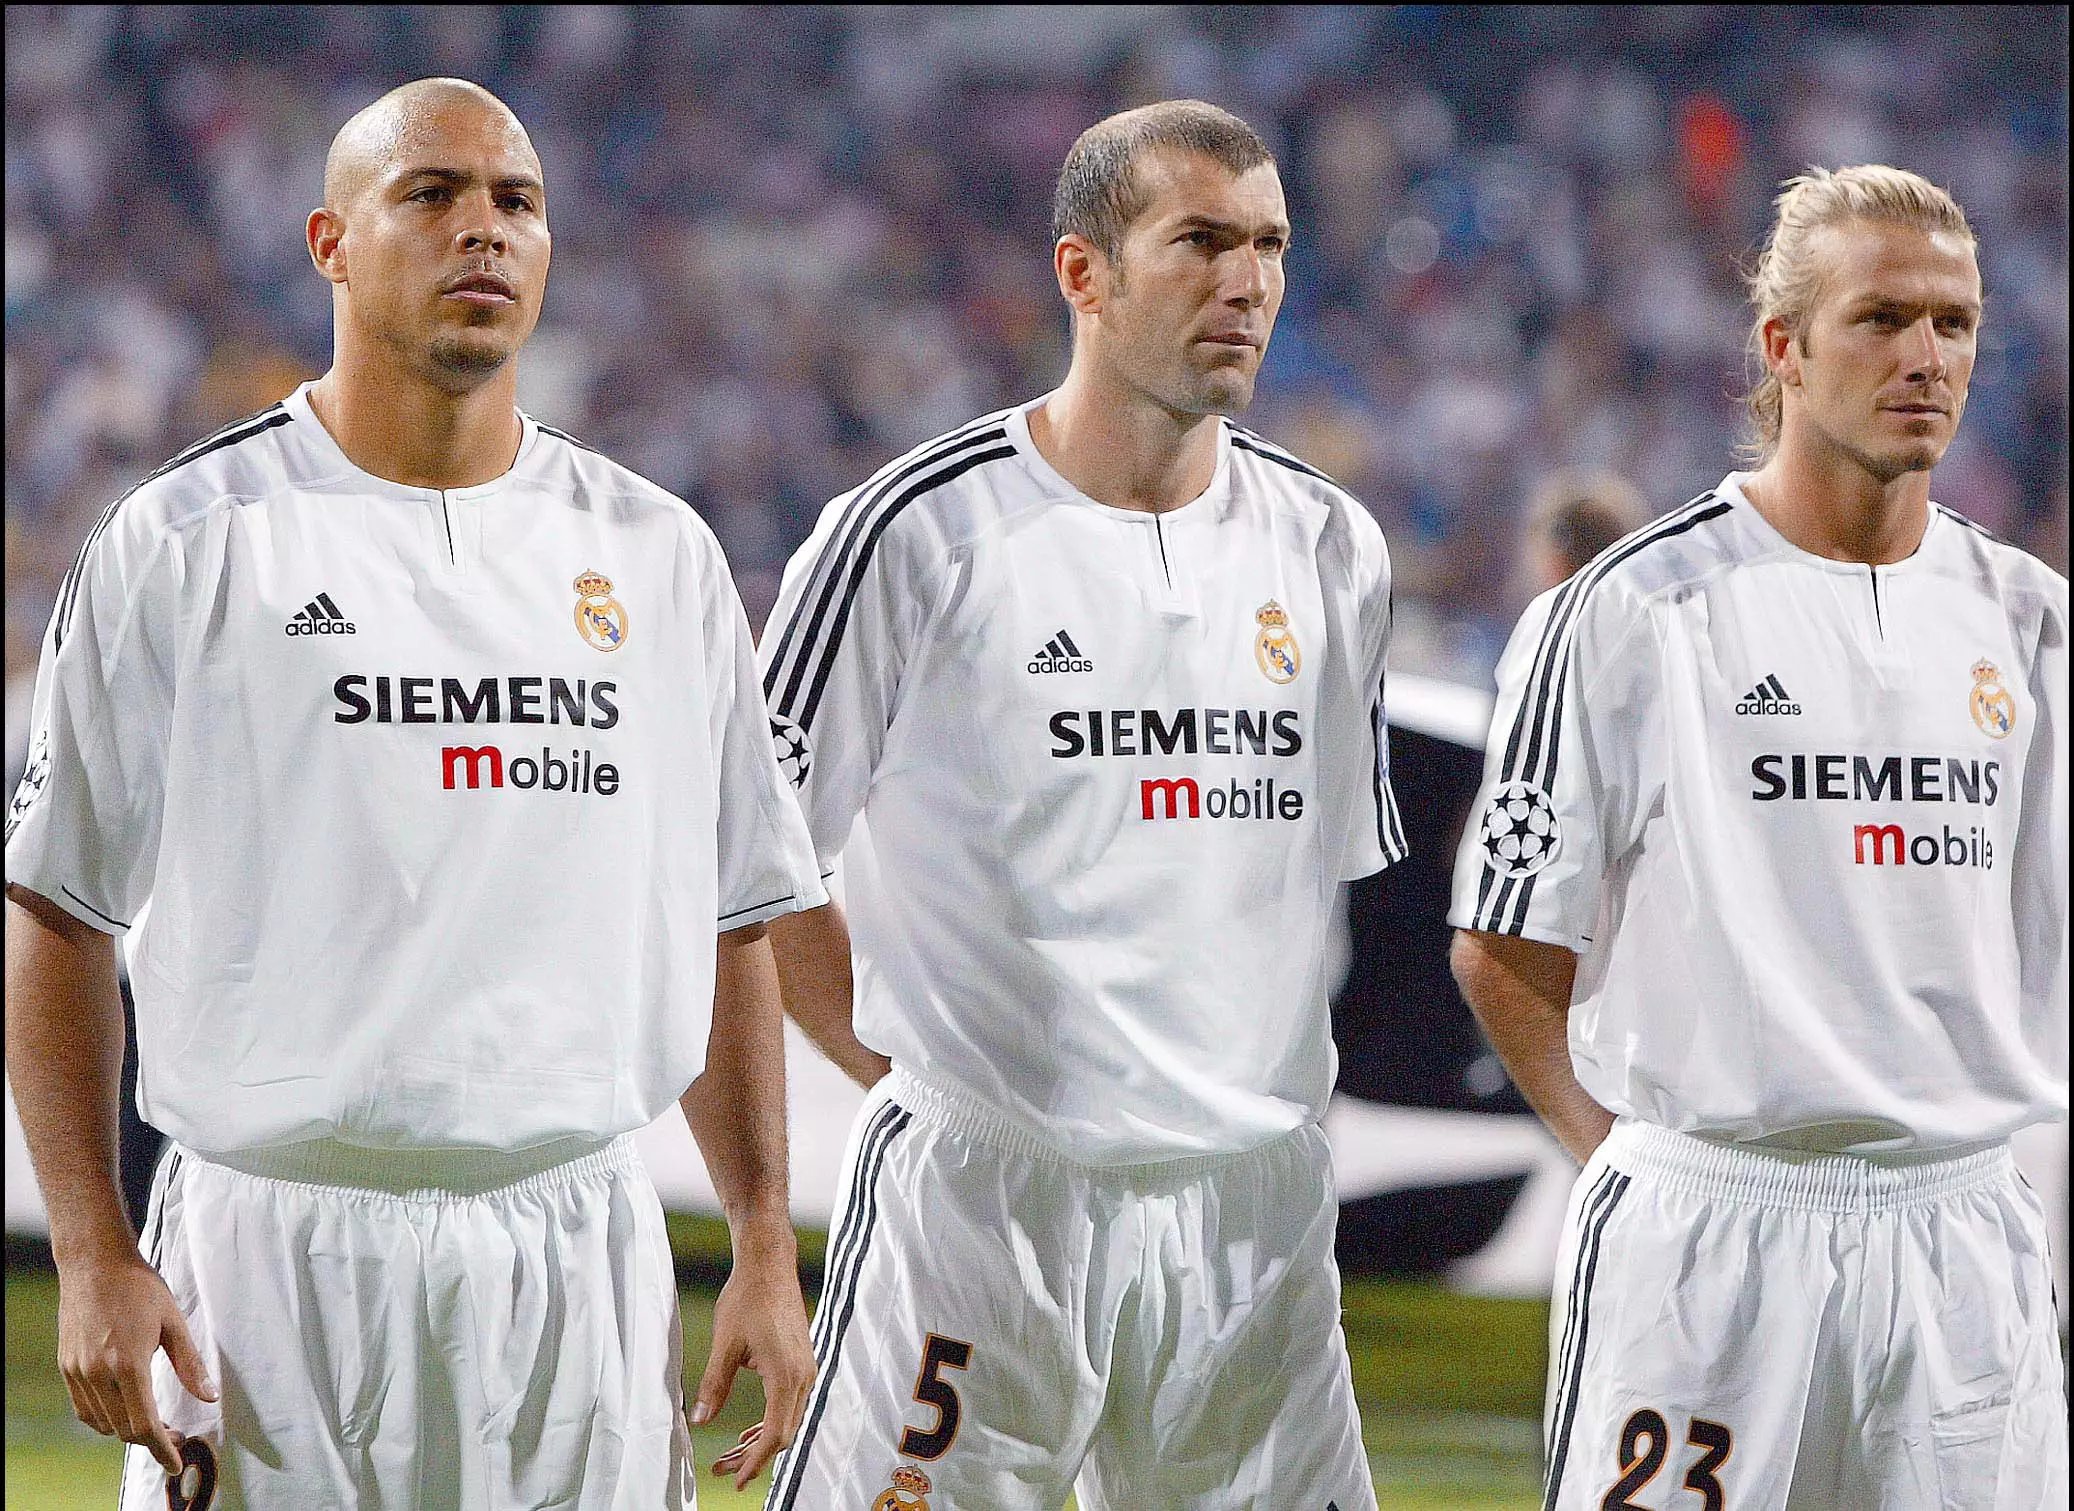 Zidane lines up alongside Ronaldo and Beckham. Image: PA